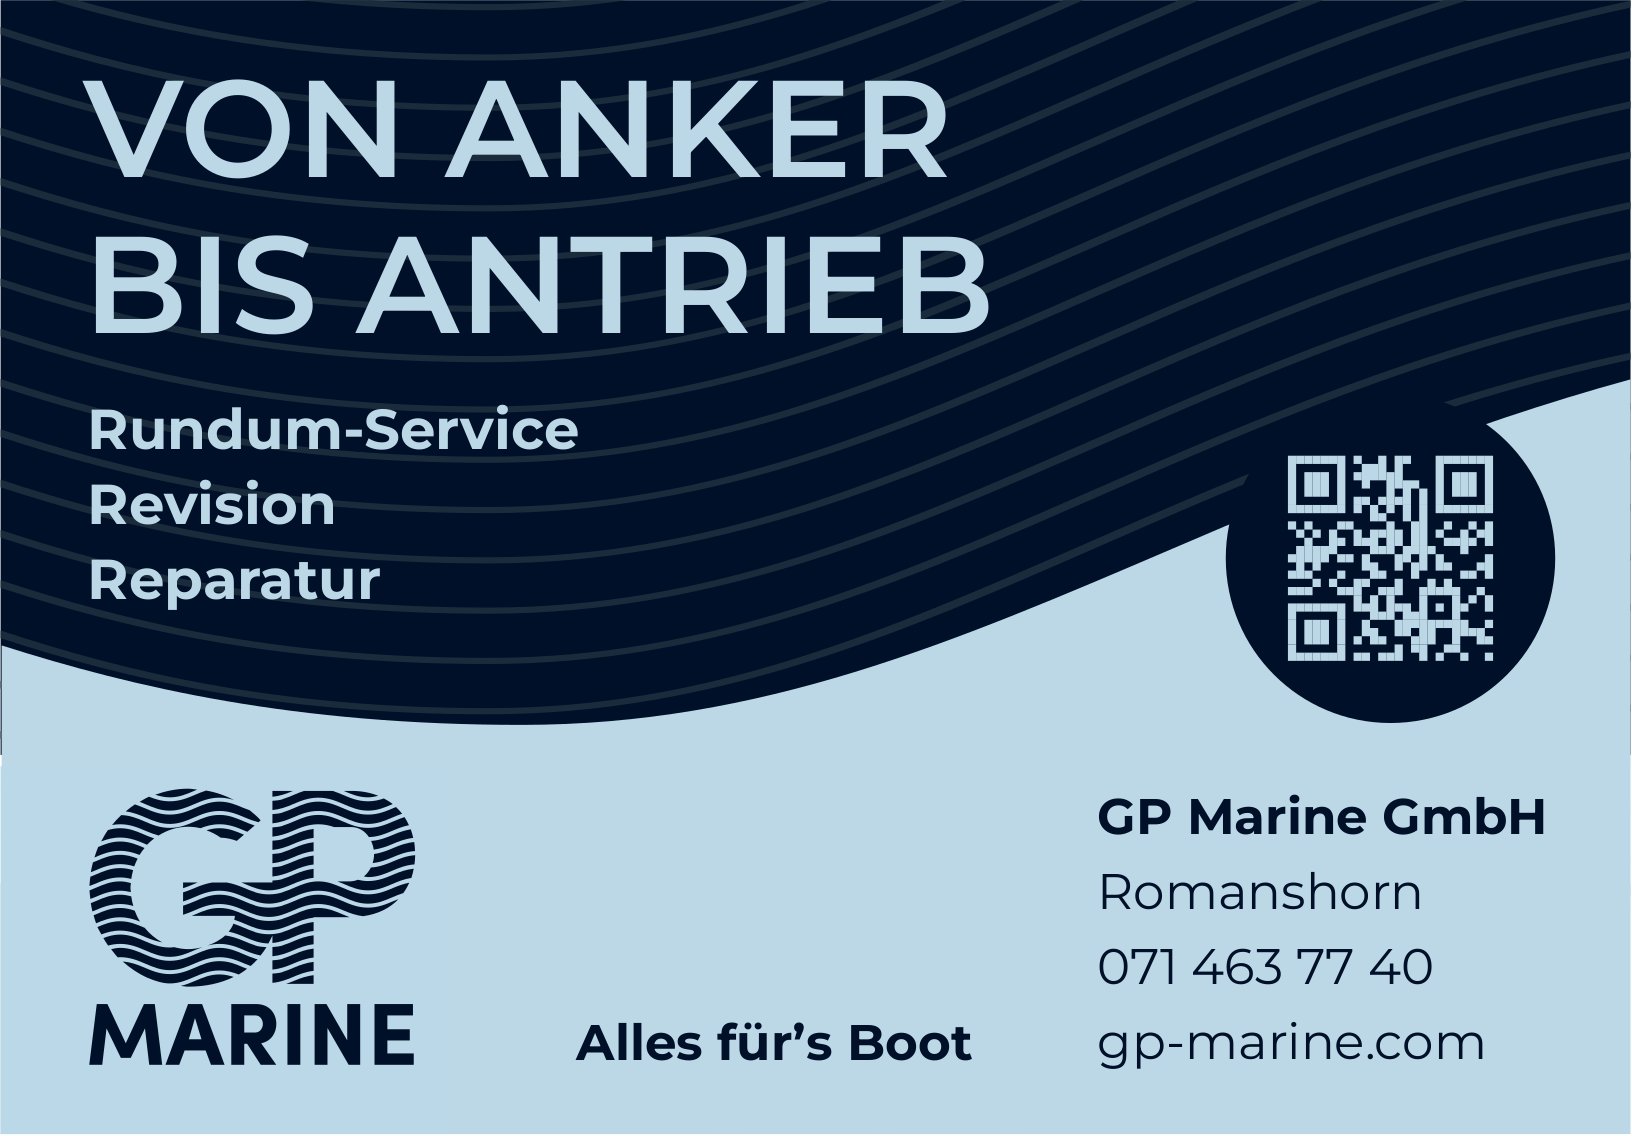 GP Marine GmbH, Romanshorn - Rundum-Service Revision Reparatur